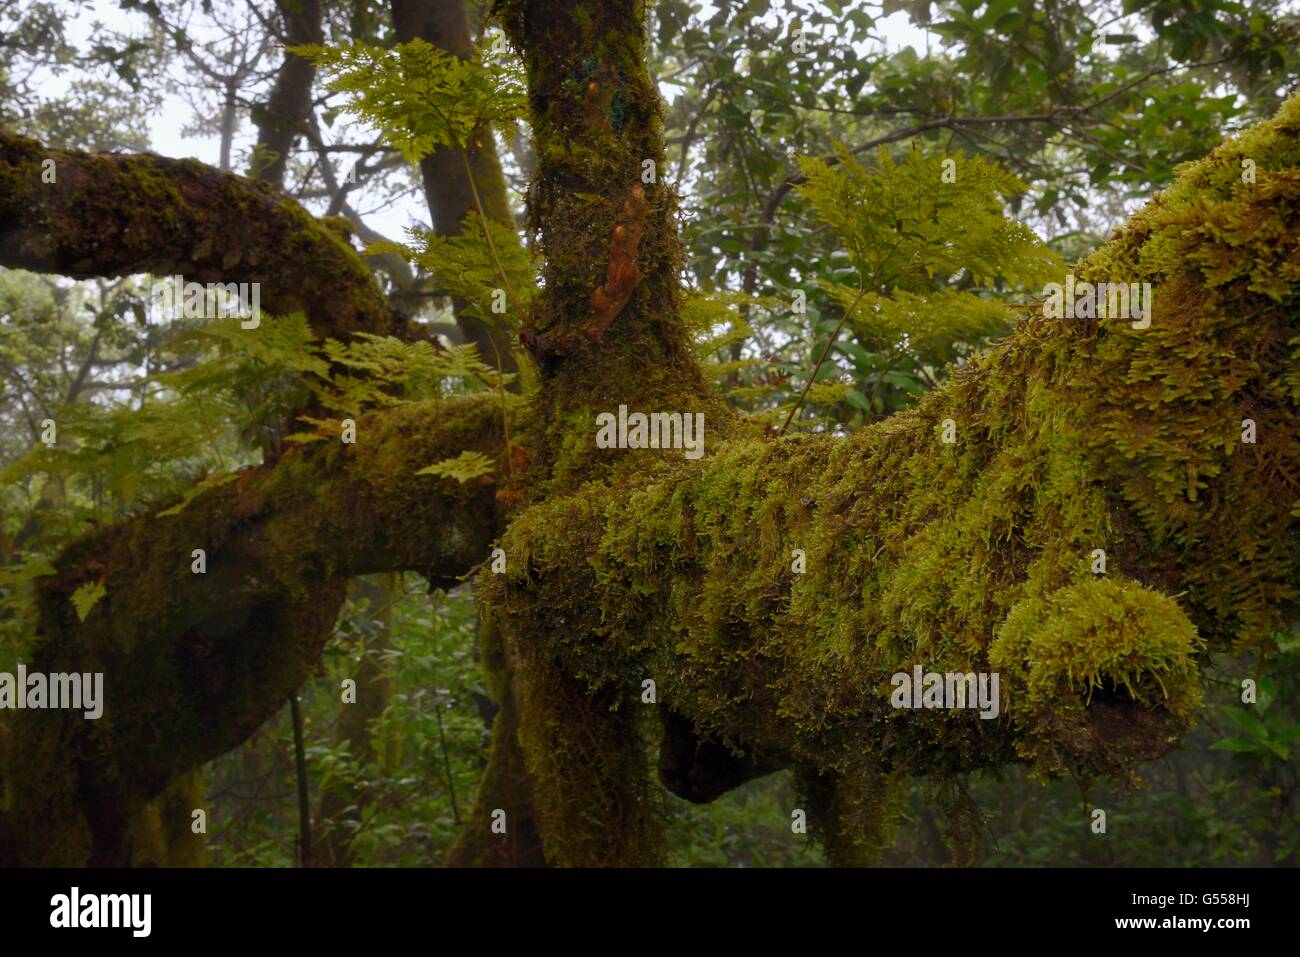 Helecho pie de Liebre / pie de conejo helechos (Davallia canariensis) la brotación de rizomas aéreos y los musgos crecen en las ramas de los árboles Foto de stock